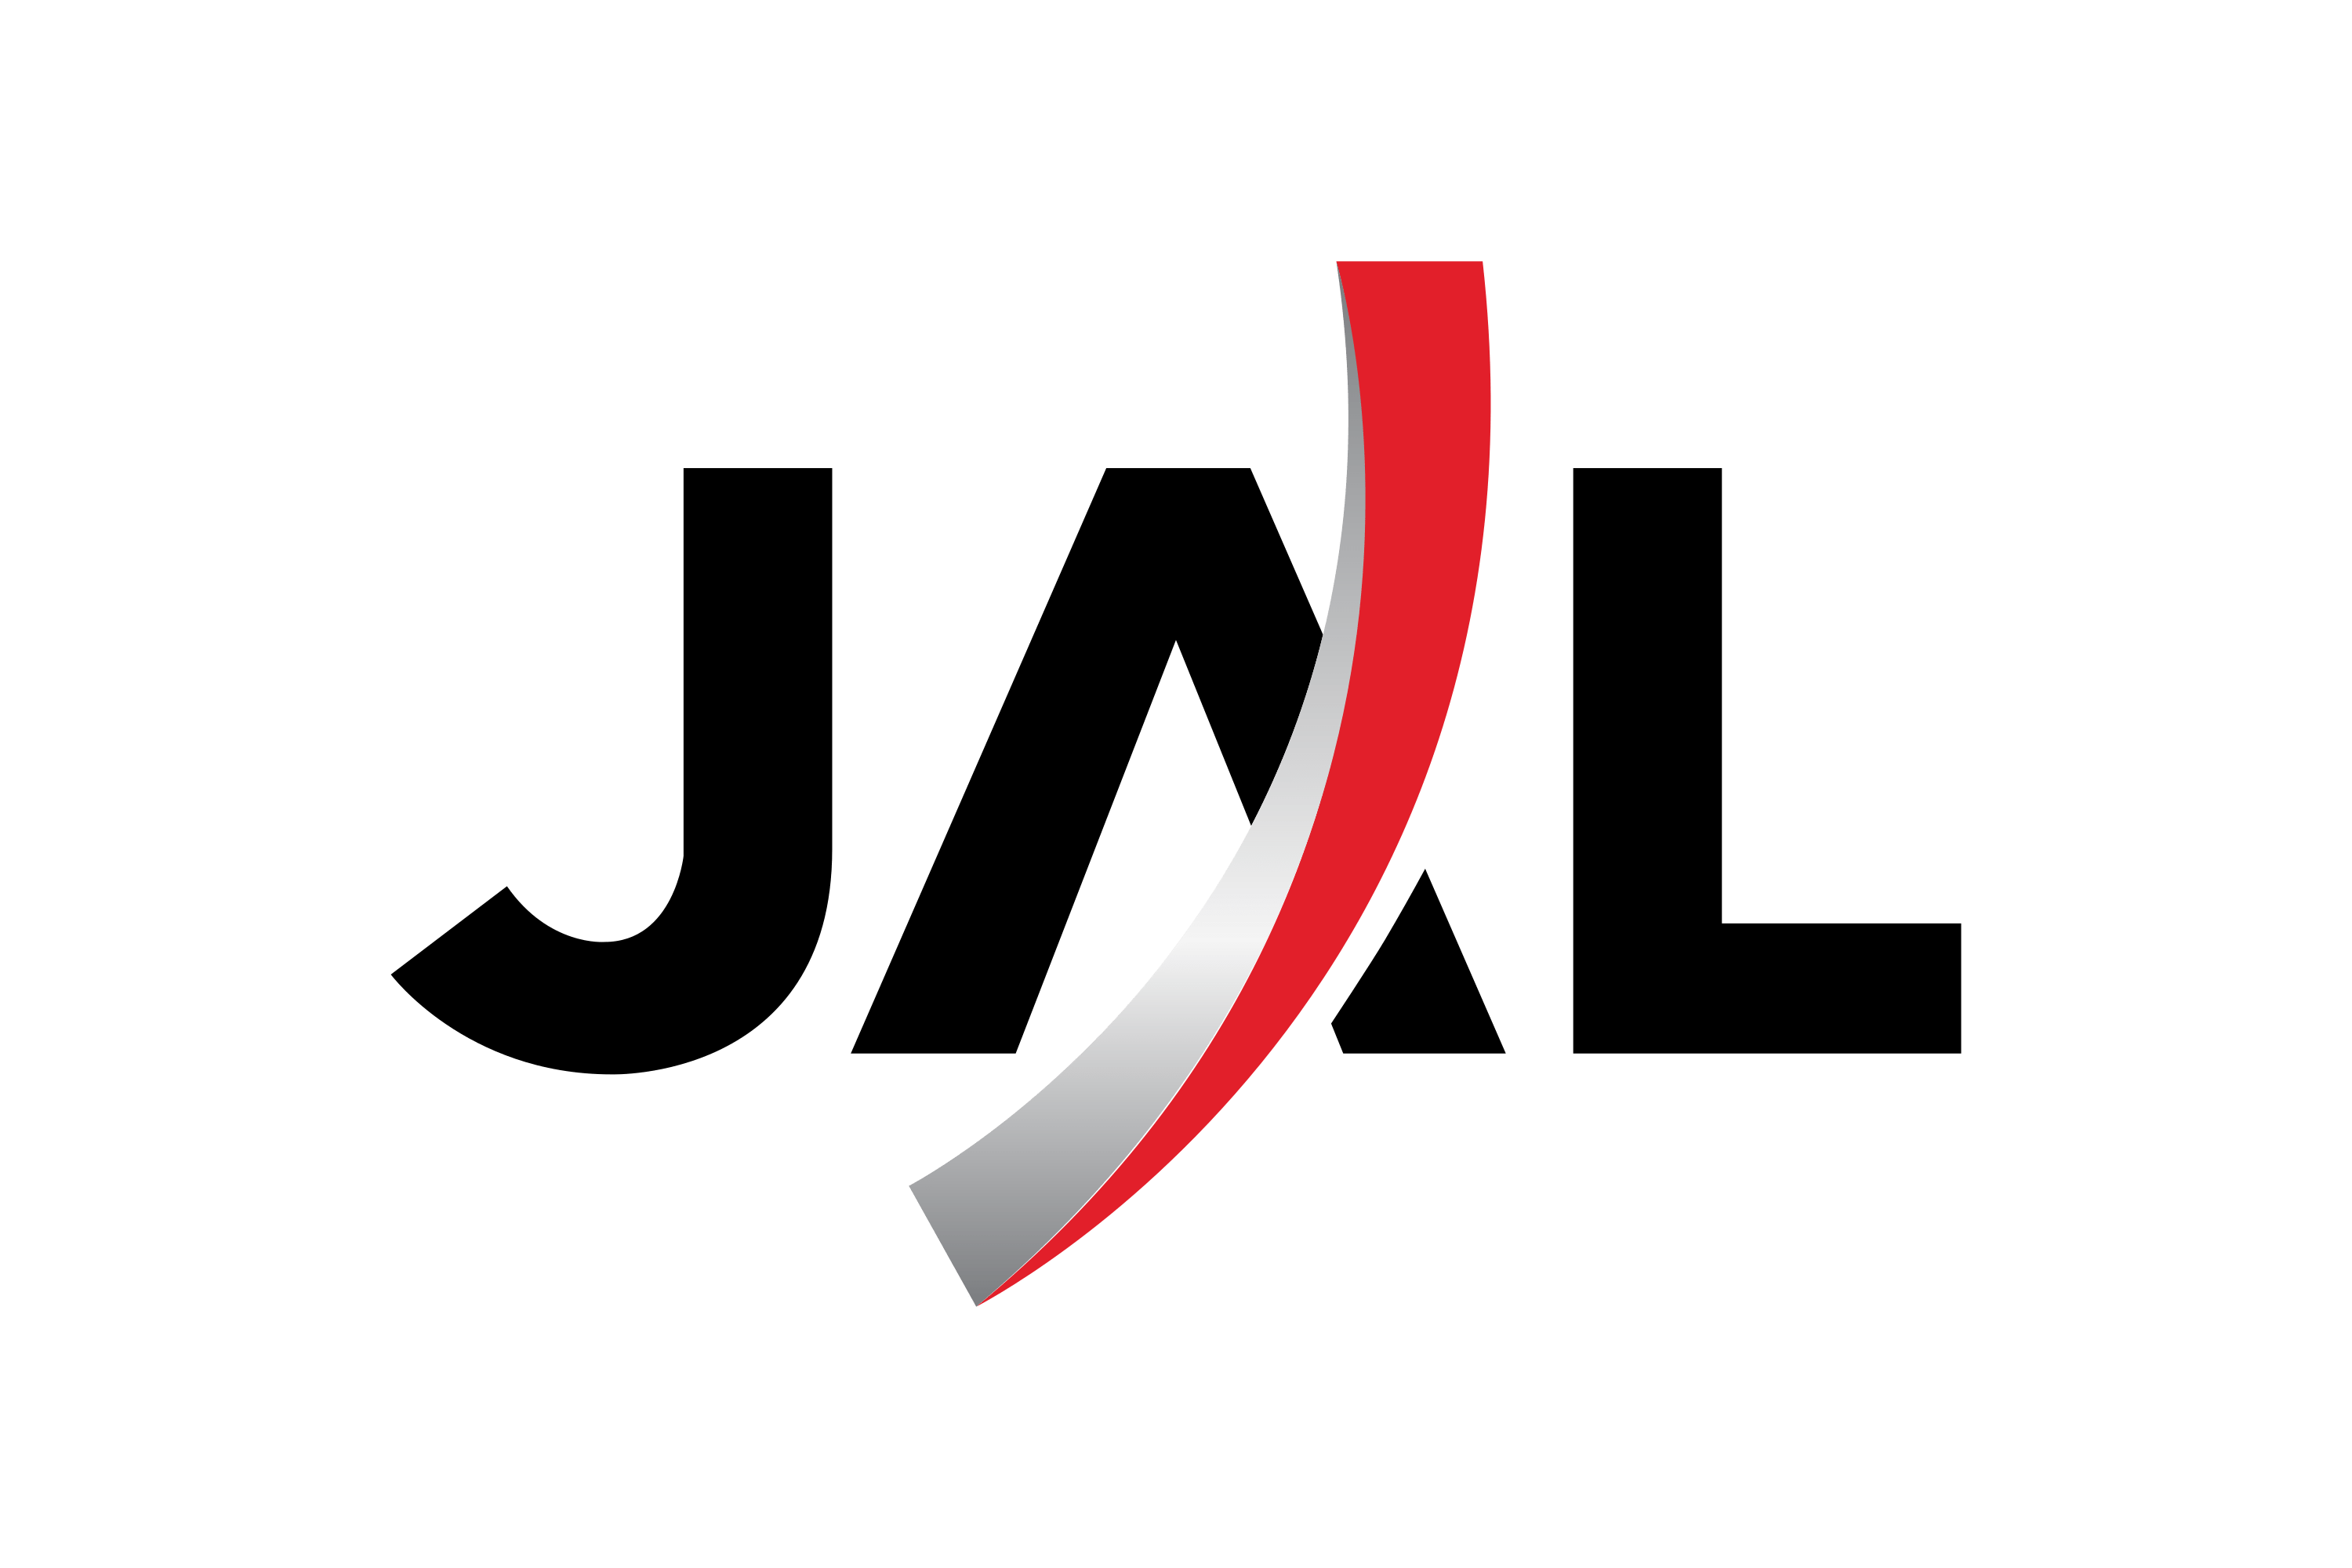 Download Japan Airlines Domestic (JD, JLJ) Logo in SVG Vector or PNG